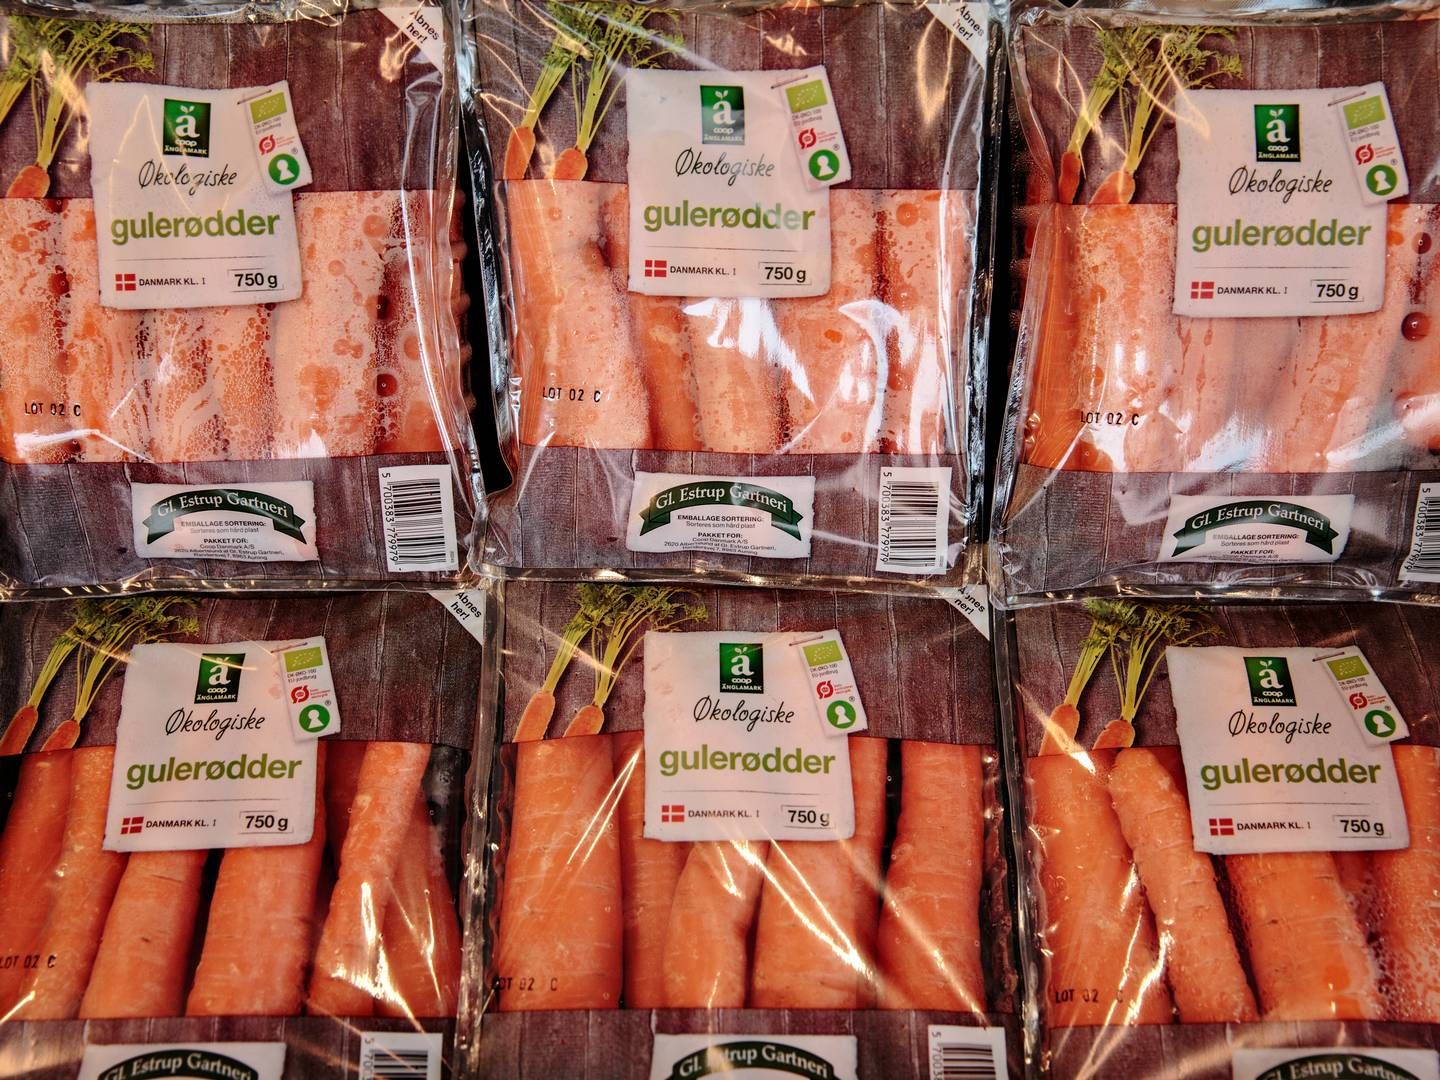 Gl. Estrup Gartneris grøntsager bliver solgt i en række danske supermarkeder, og det har vist sig at være en profitabel forretning | Foto: Miriam Dalsgaard